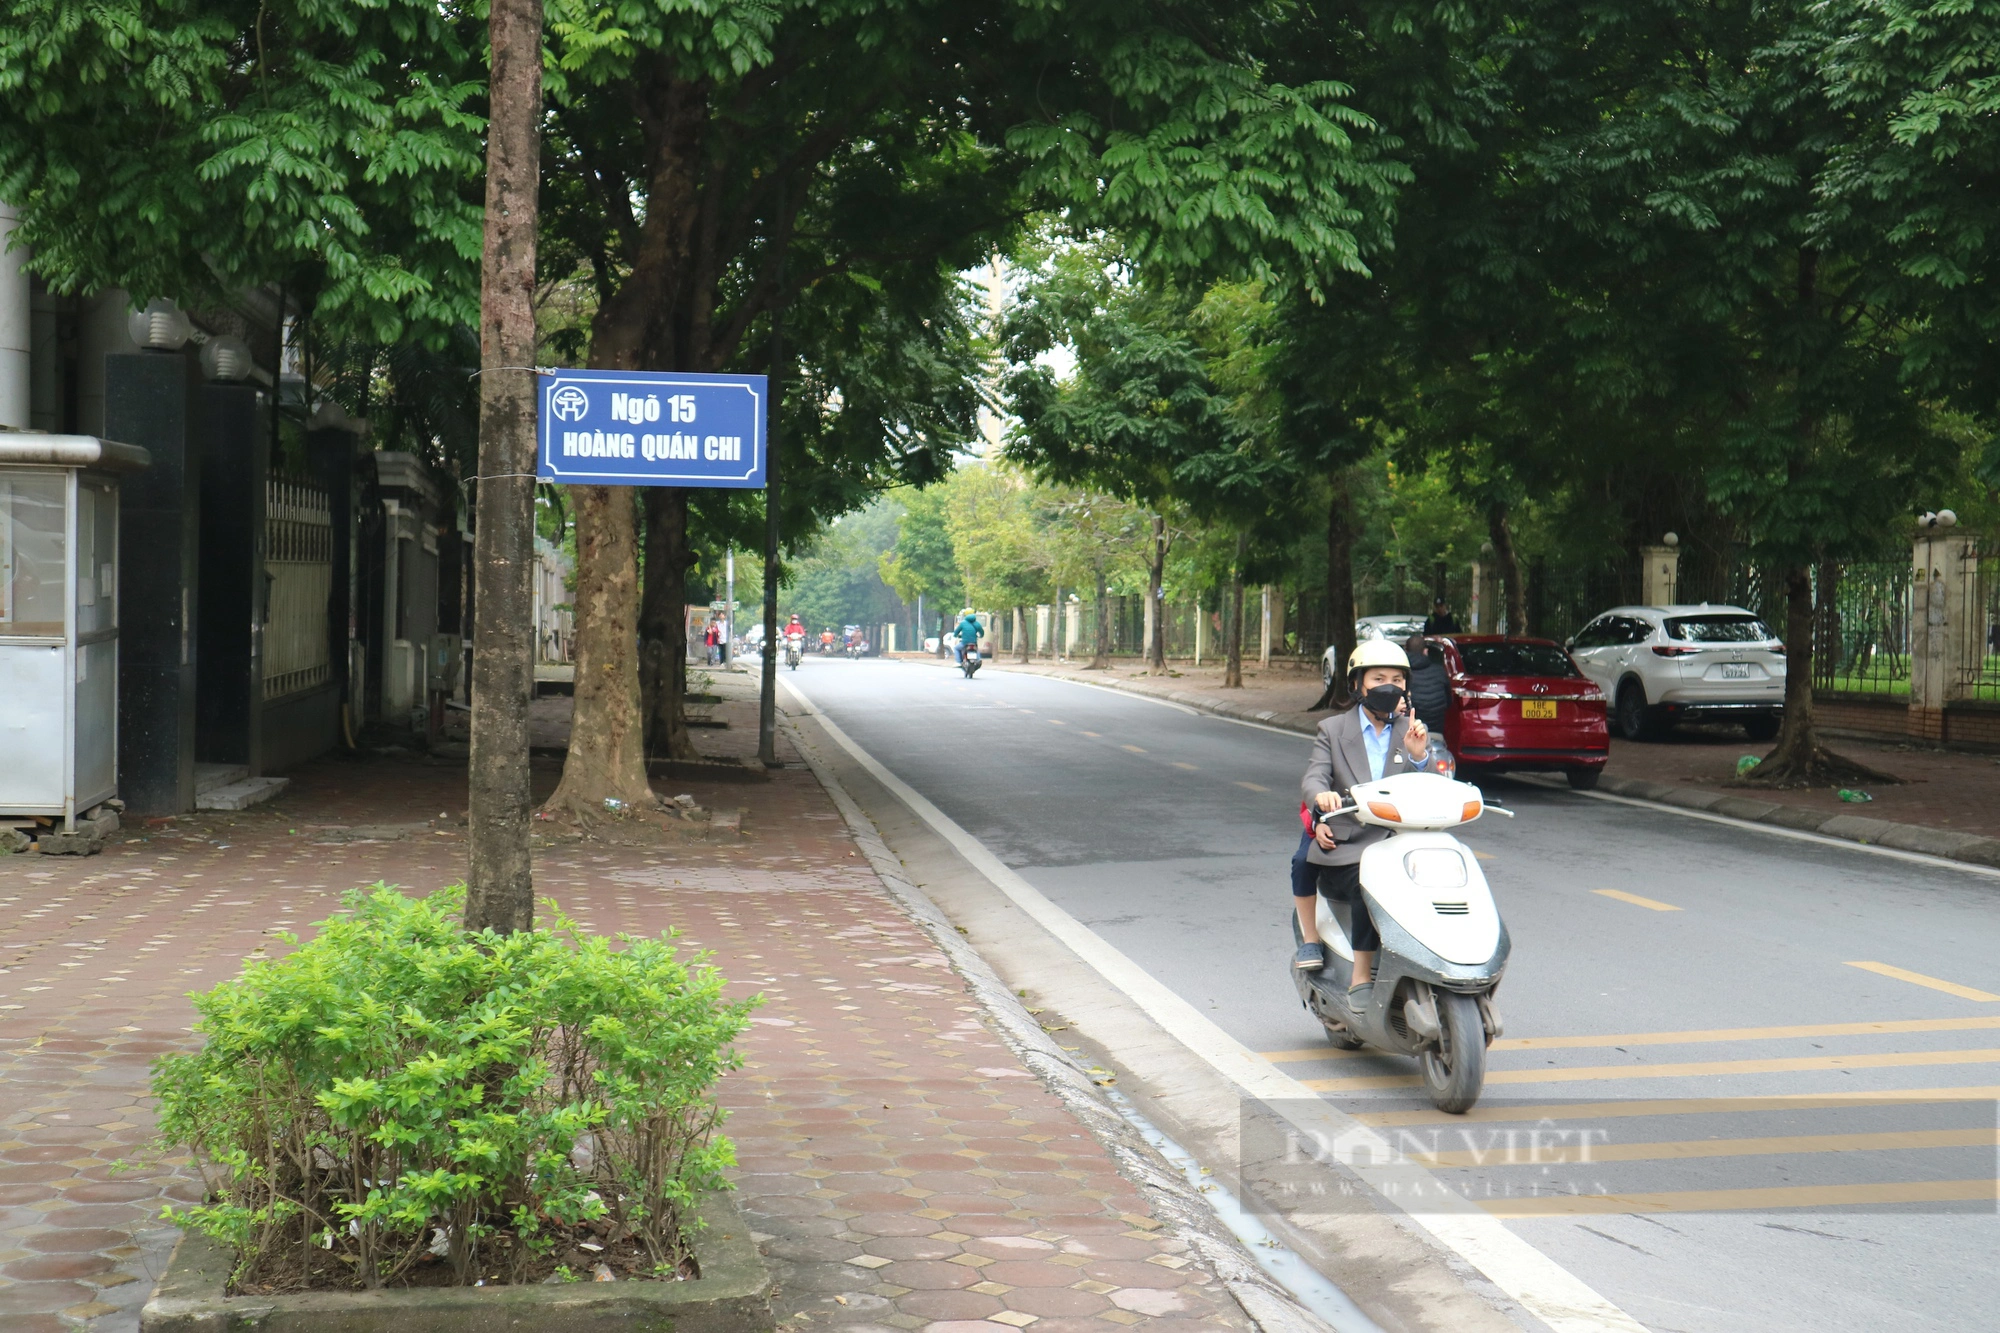 Chuyện lạ "có một không hai" ở Hà Nội: Biển báo tên đường được treo trên cây- Ảnh 2.